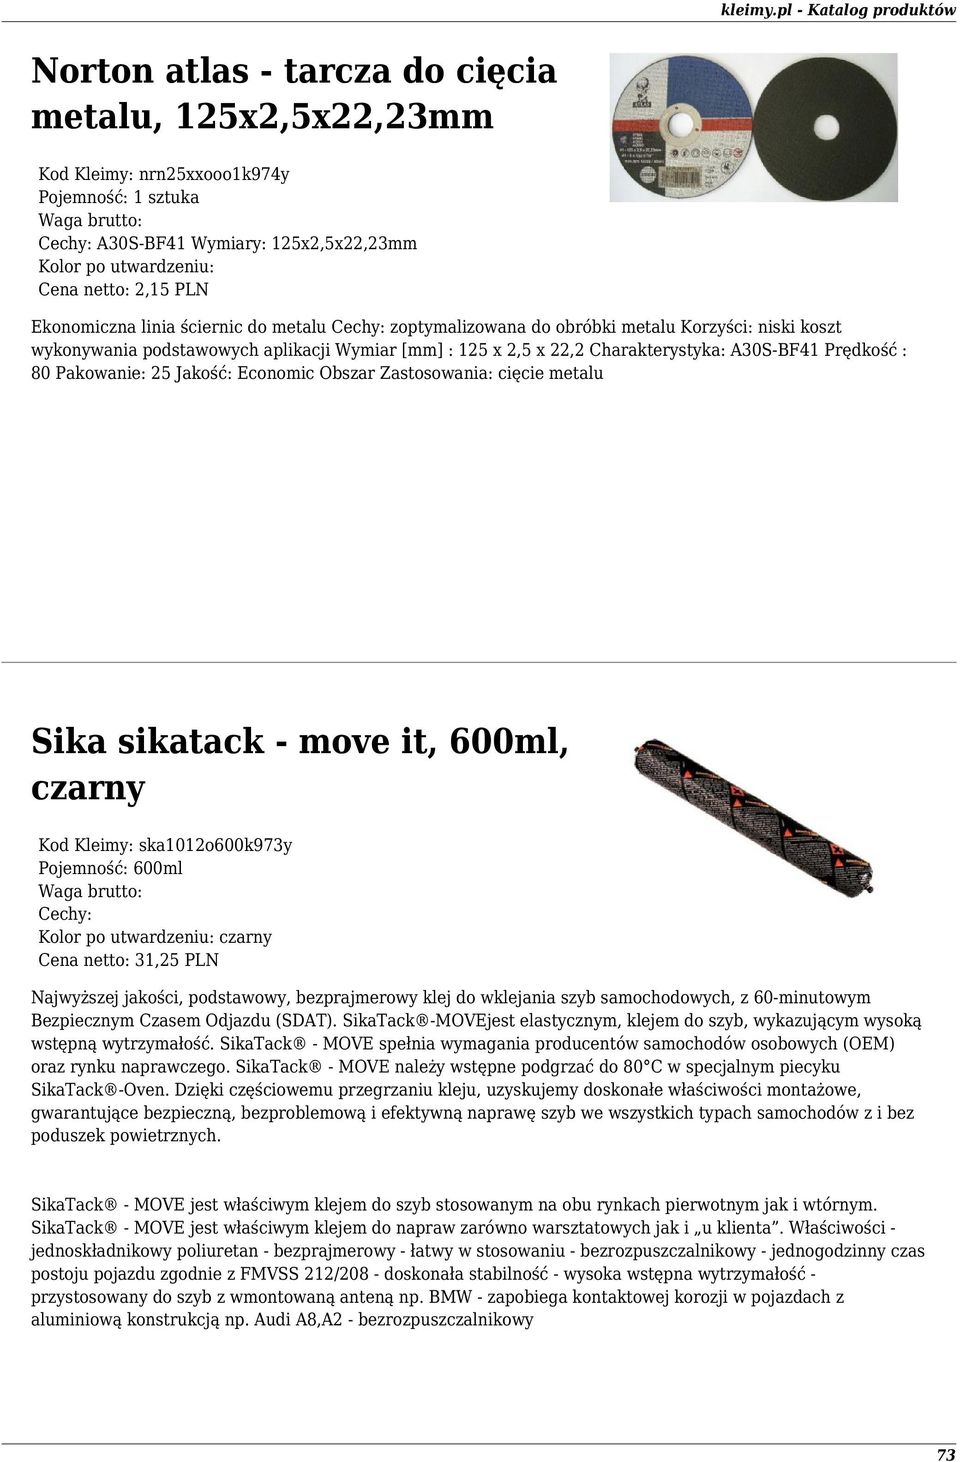 cięcie metalu Sika sikatack - move it, 600ml, czarny Kod Kleimy: ska1012o600k973y Pojemność: 600ml czarny Cena netto: 31,25 PLN Najwyższej jakości, podstawowy, bezprajmerowy klej do wklejania szyb